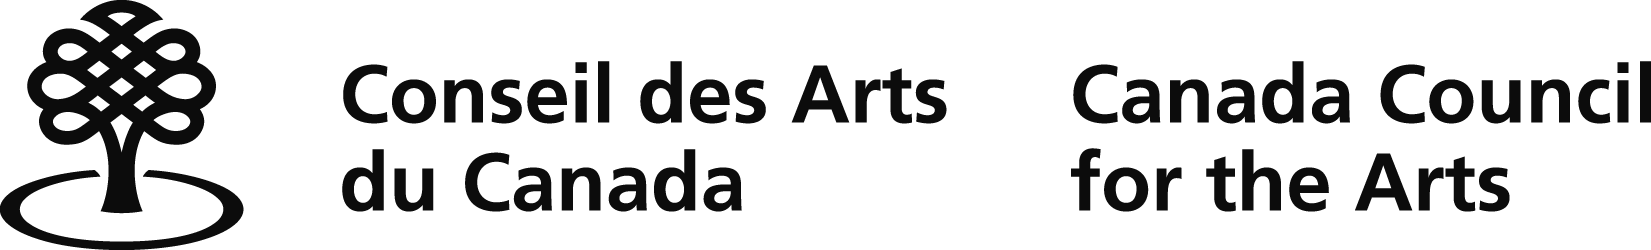 Conseil des arts du Canada (CAC)